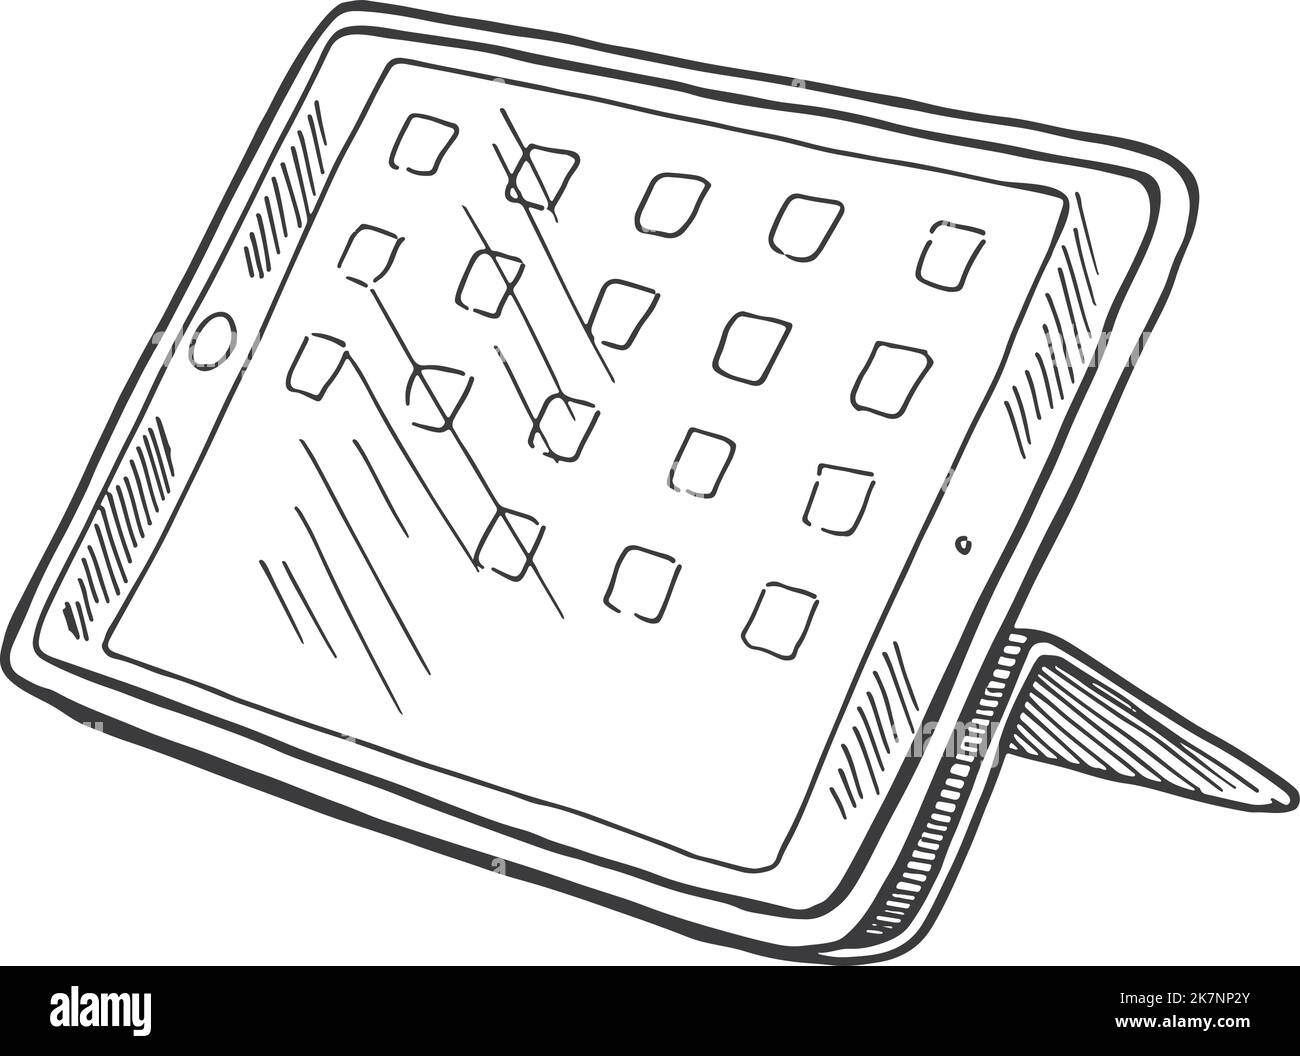 Skizze des Tabletts. Multimedia-Gadget-Bildschirm im handgezeichneten Stil Stock Vektor